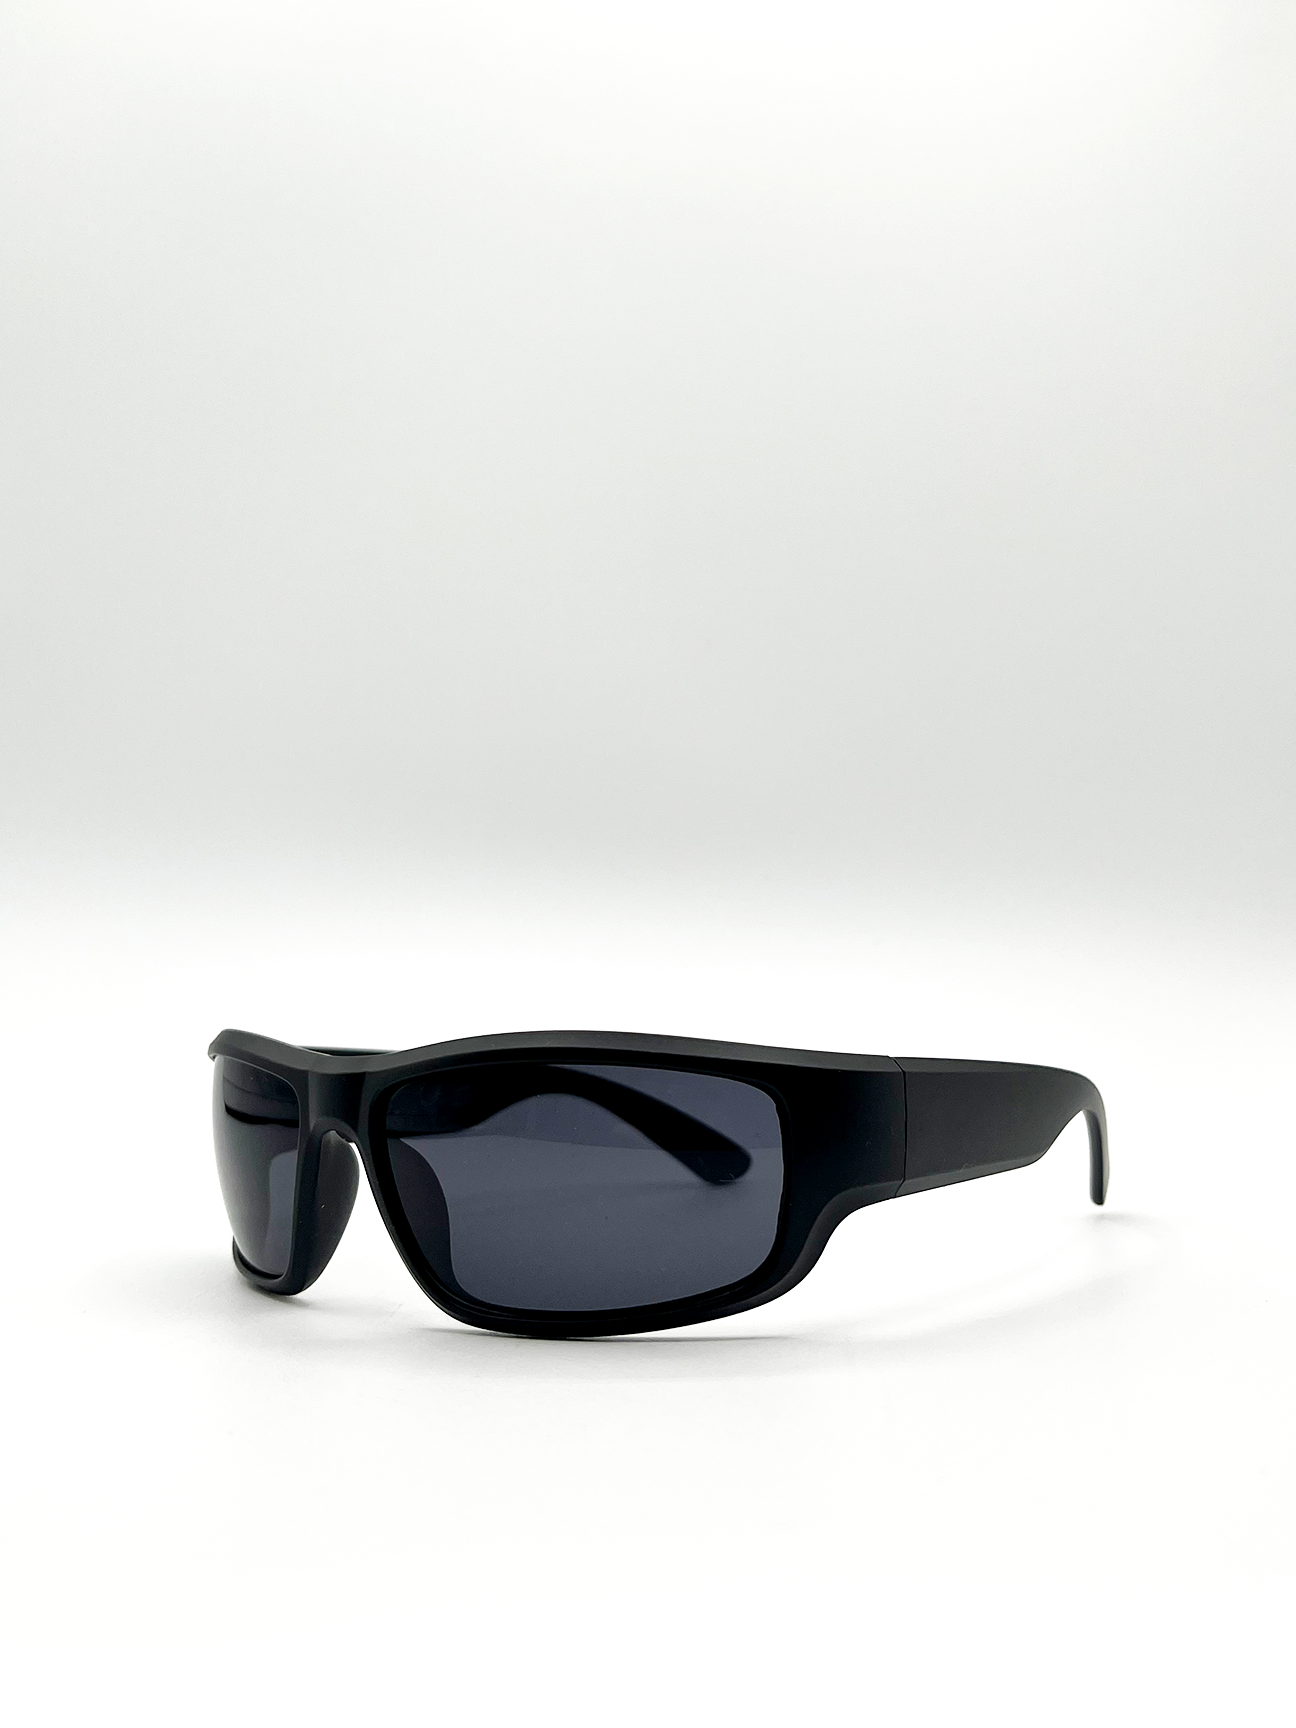 Matte Black Racer Style Sunglasses with Black Lenses